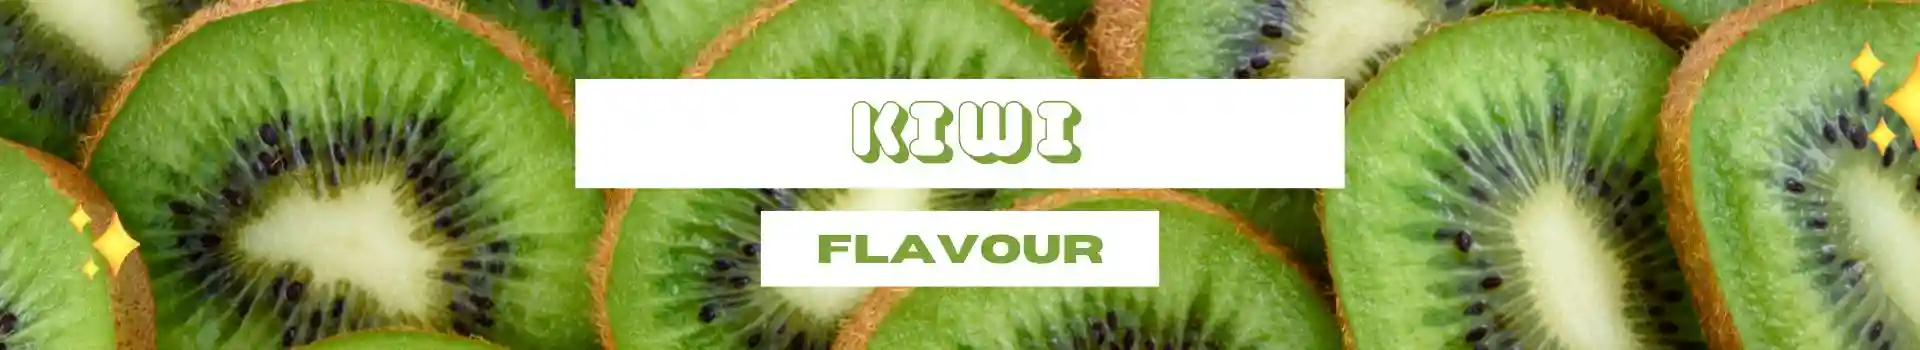 IGET Vape Flavours - Kiwi